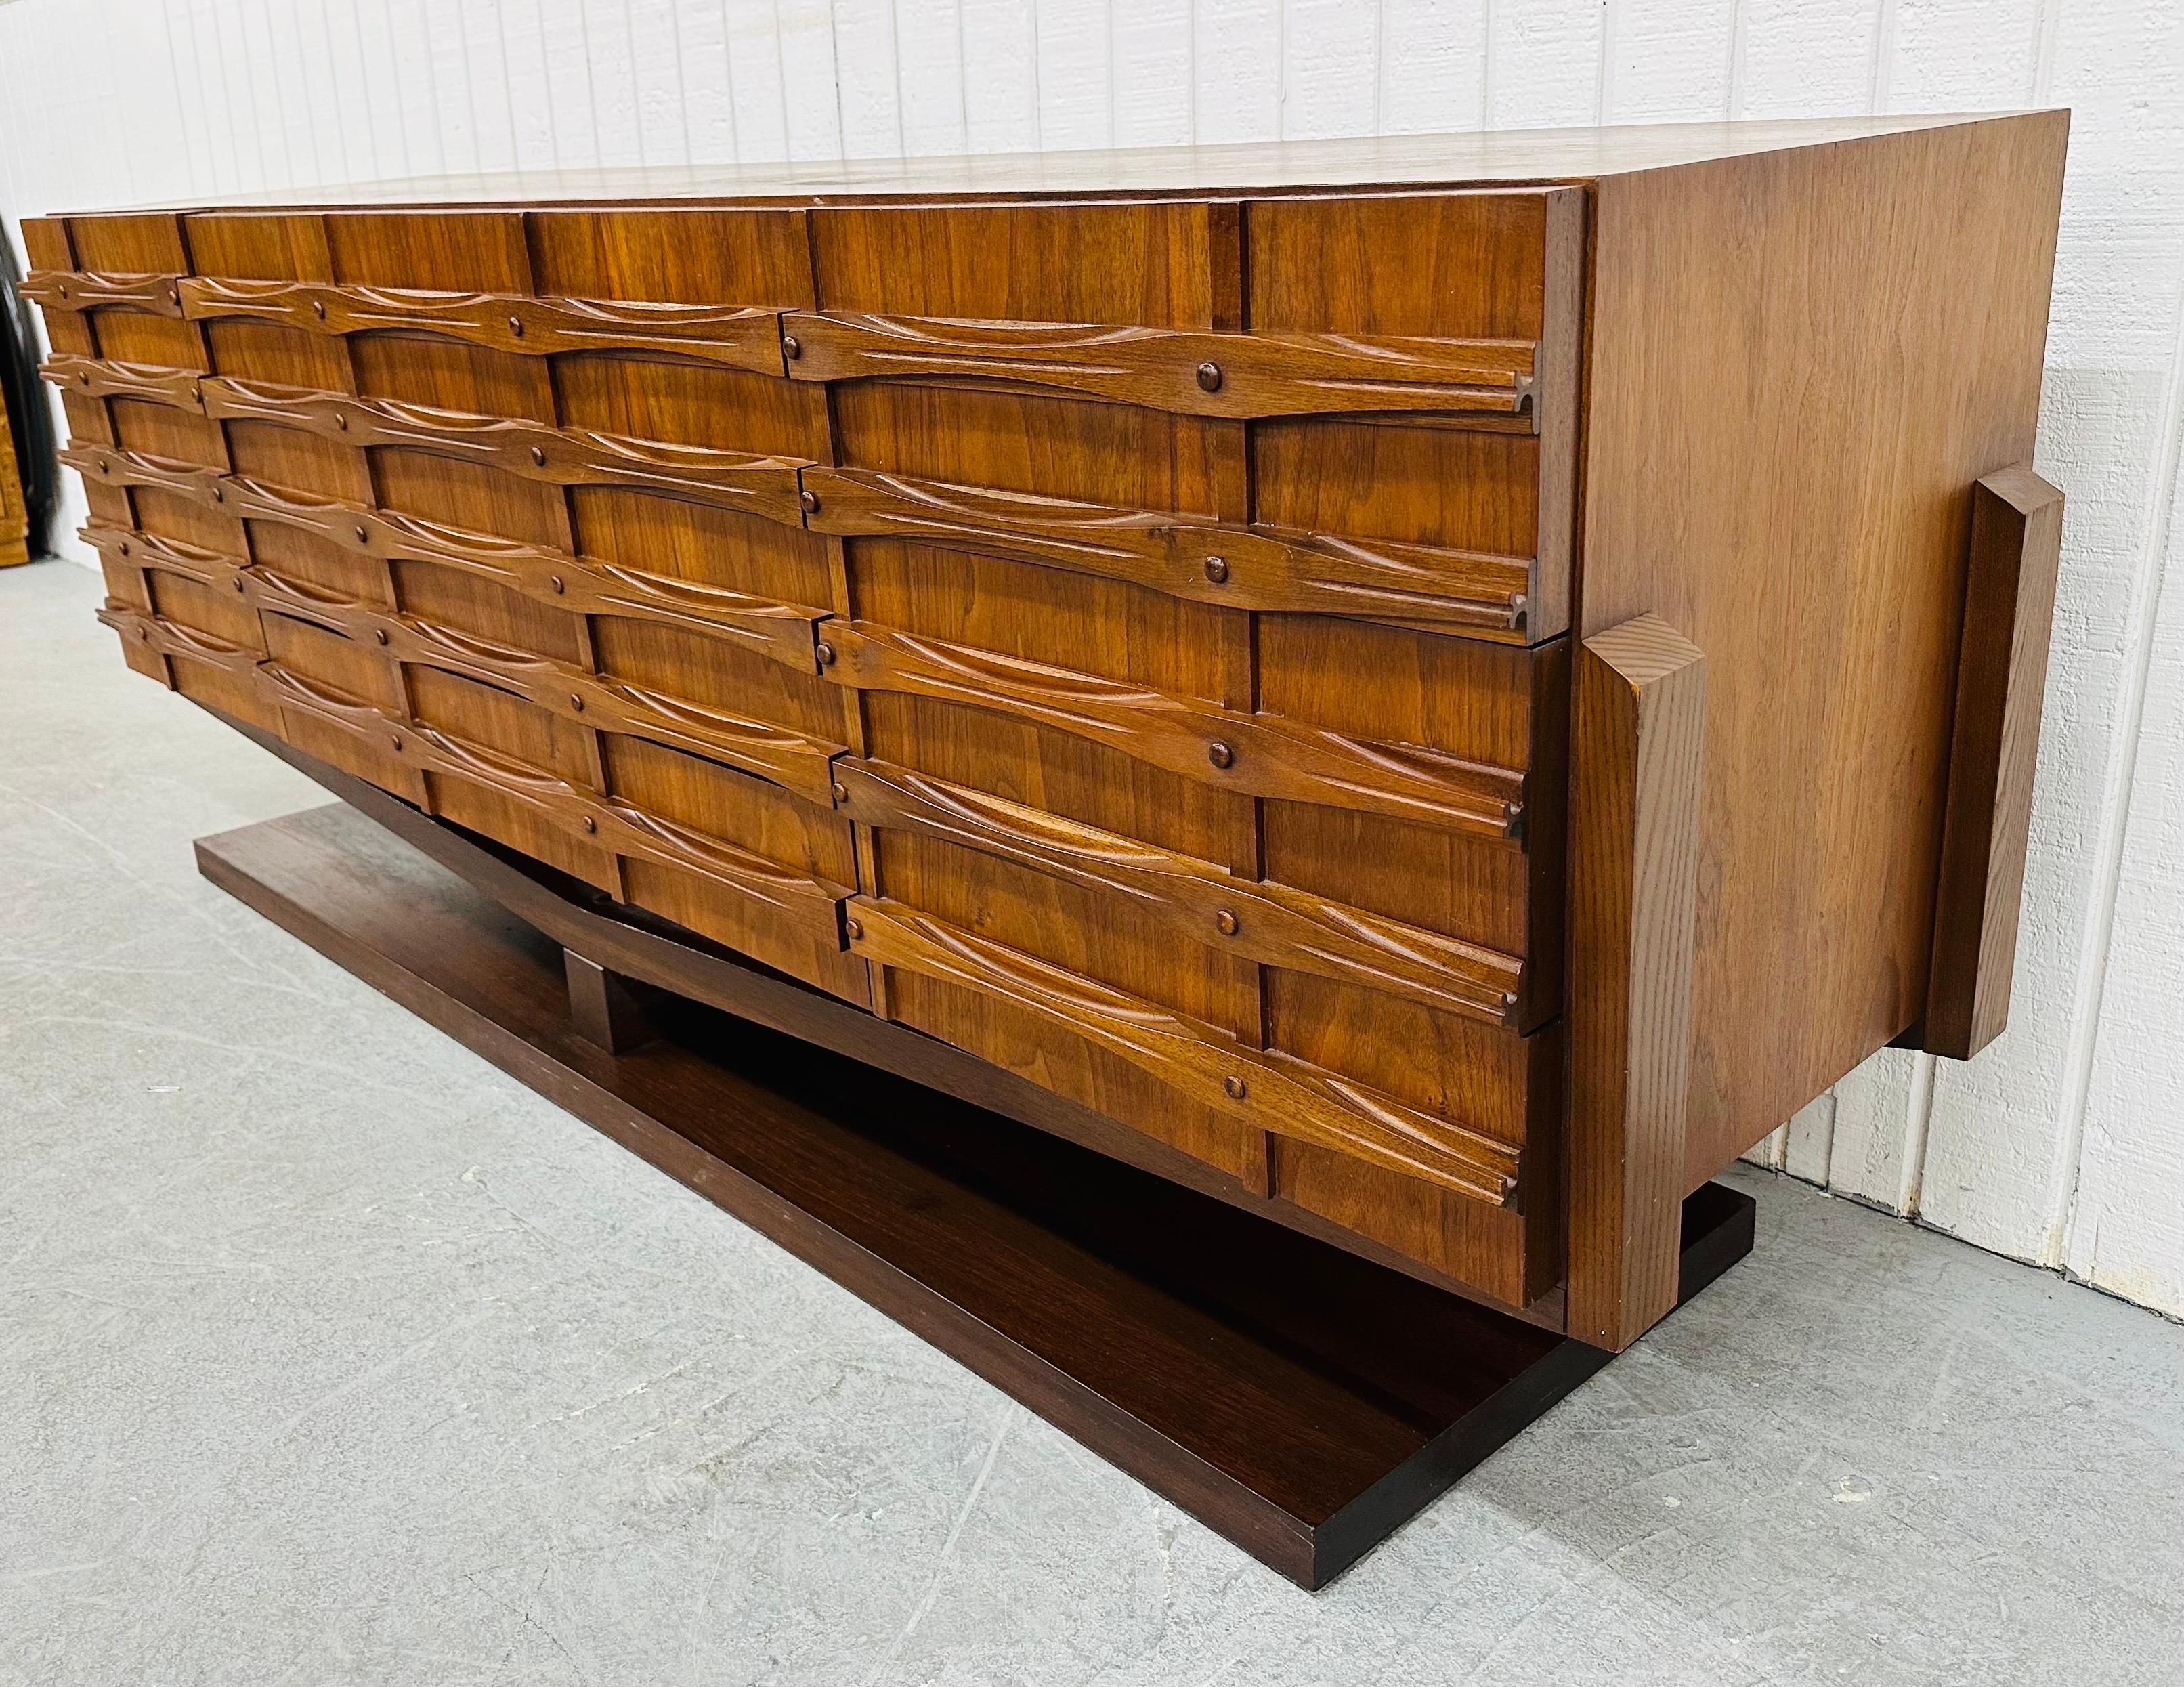 Diese Auflistung ist für eine Mid-Century Modern Brutalist 9-Schublade Dresser. Er hat ein geradliniges Design, neun Schubladen mit brutalistischen Fronten, einen Holzsockel und eine schöne Walnussoberfläche. Dies ist eine außergewöhnliche